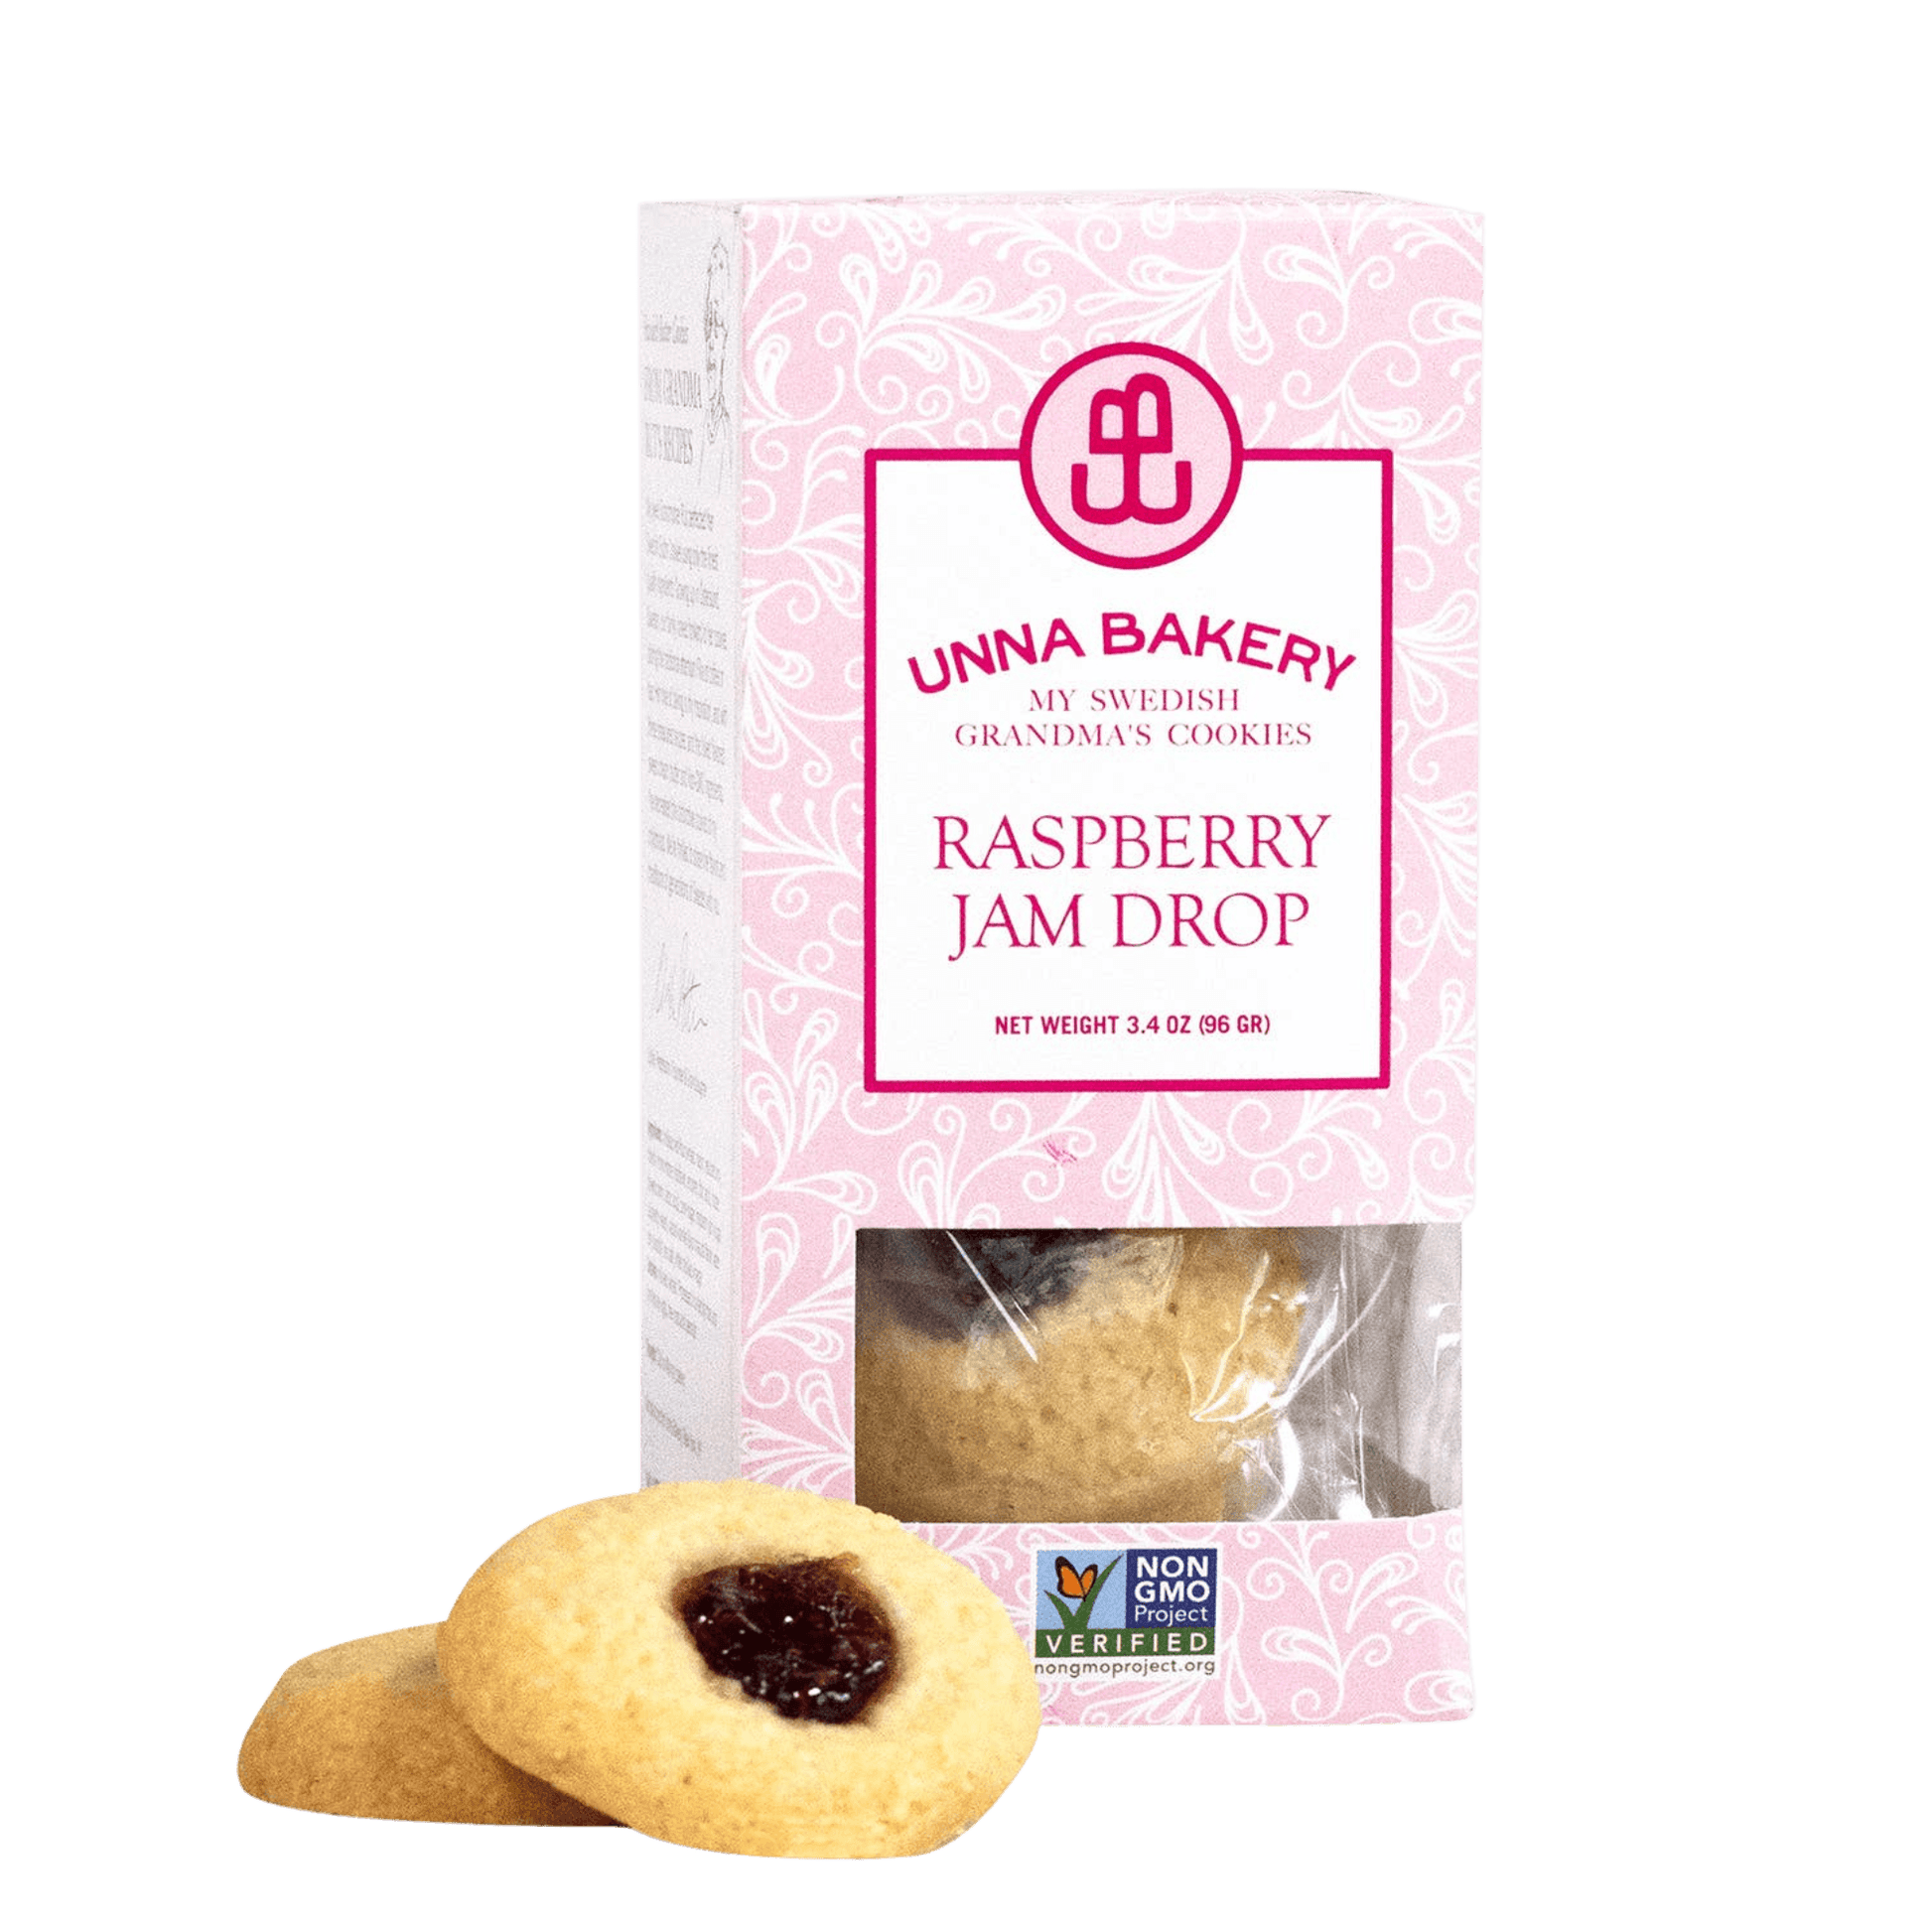 Raspberry Jam Drop Cookies - Unboxme